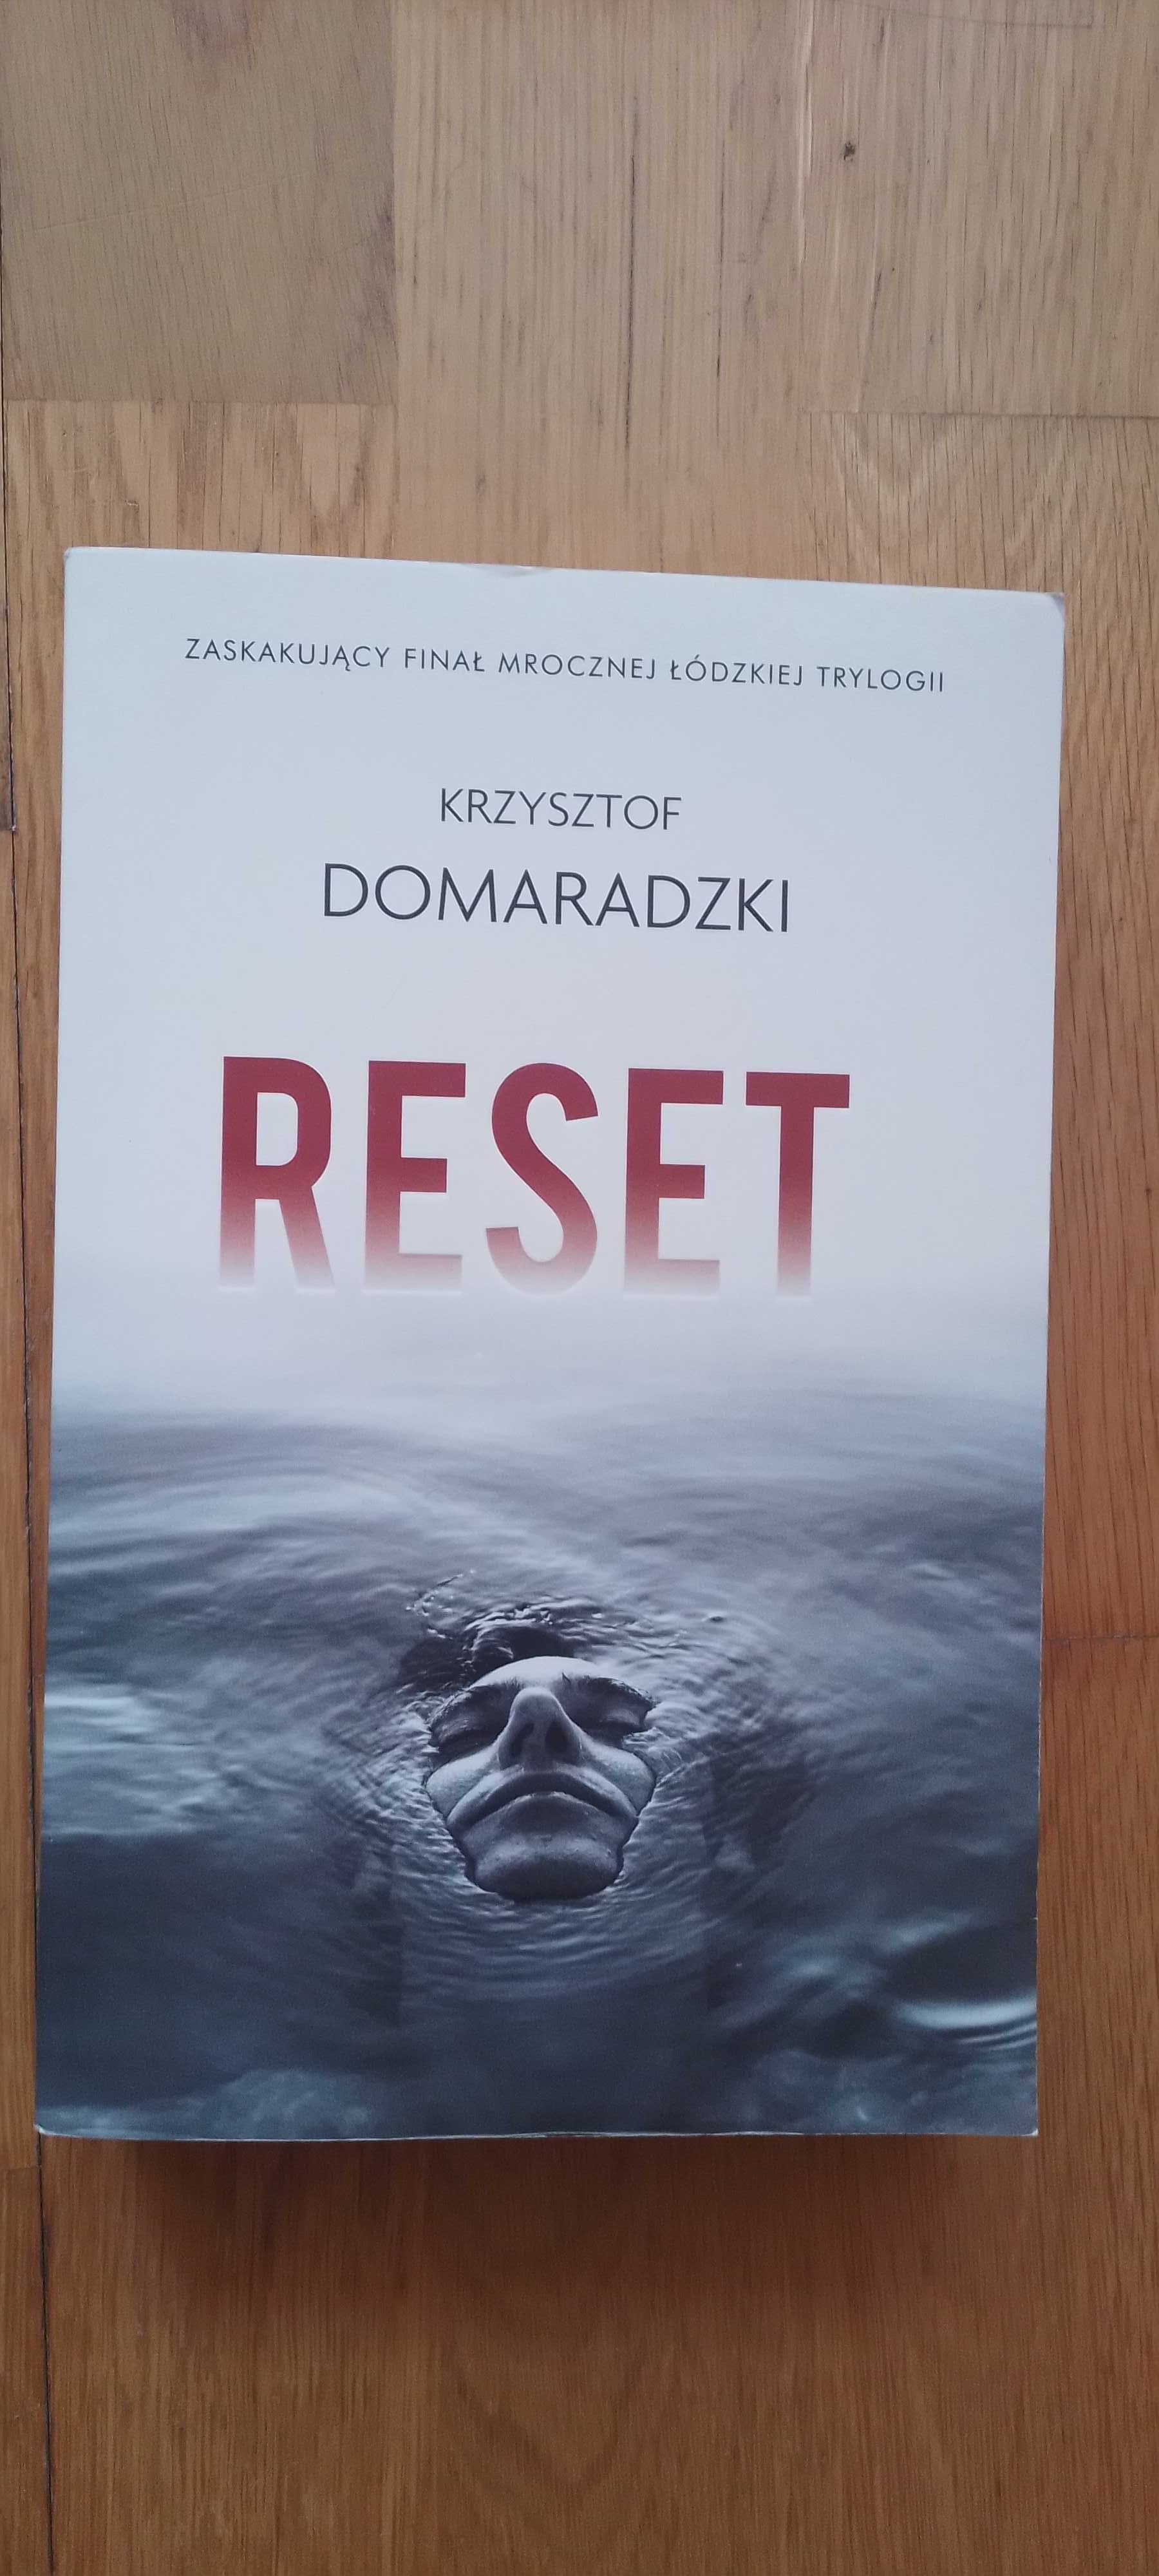 Domaradzki Krzysztof - Reset